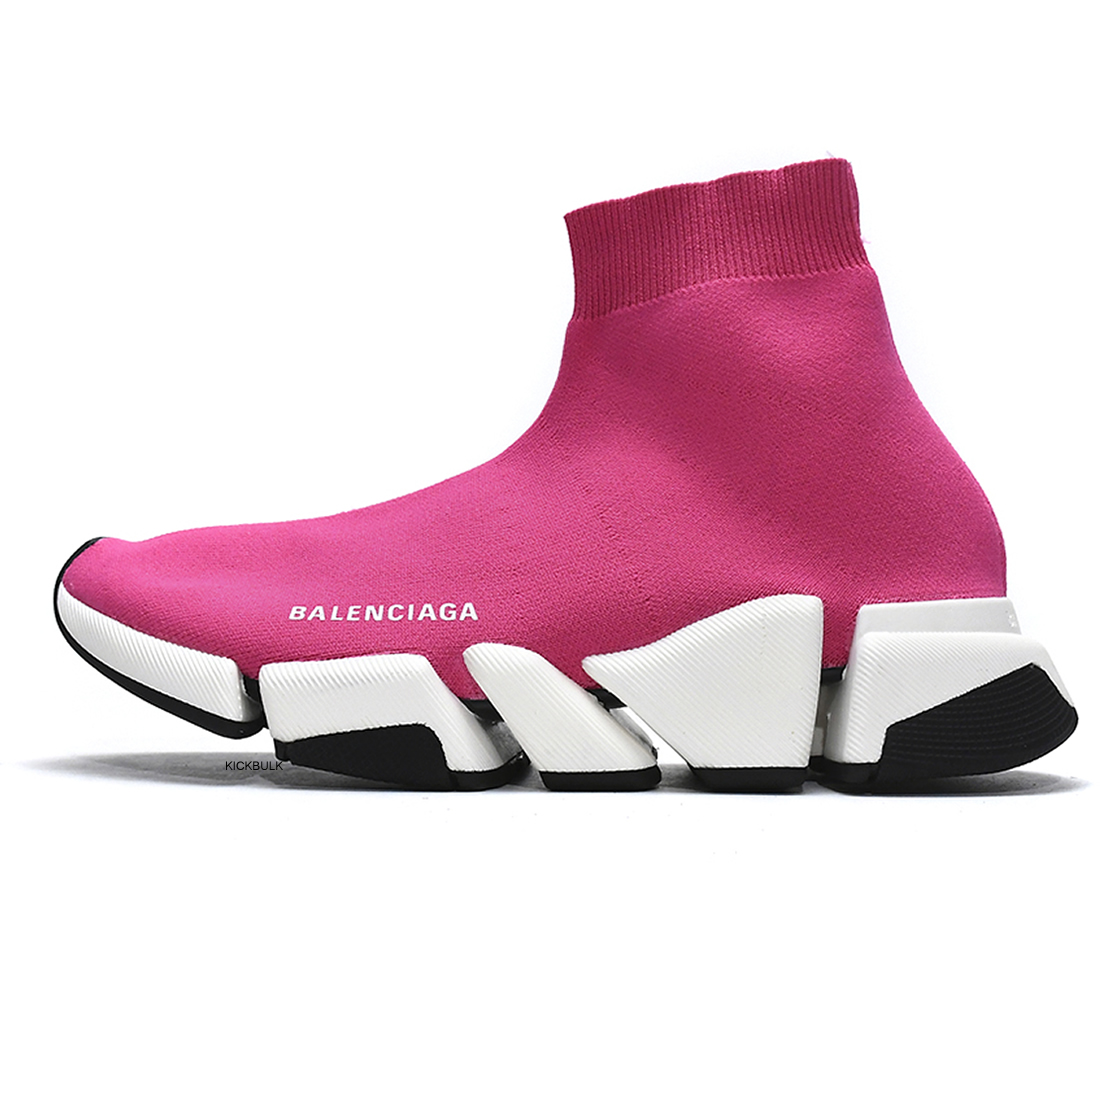 Balenciaga Speed 2 Sneaker Pink 617196w17021015 1 - www.kickbulk.co